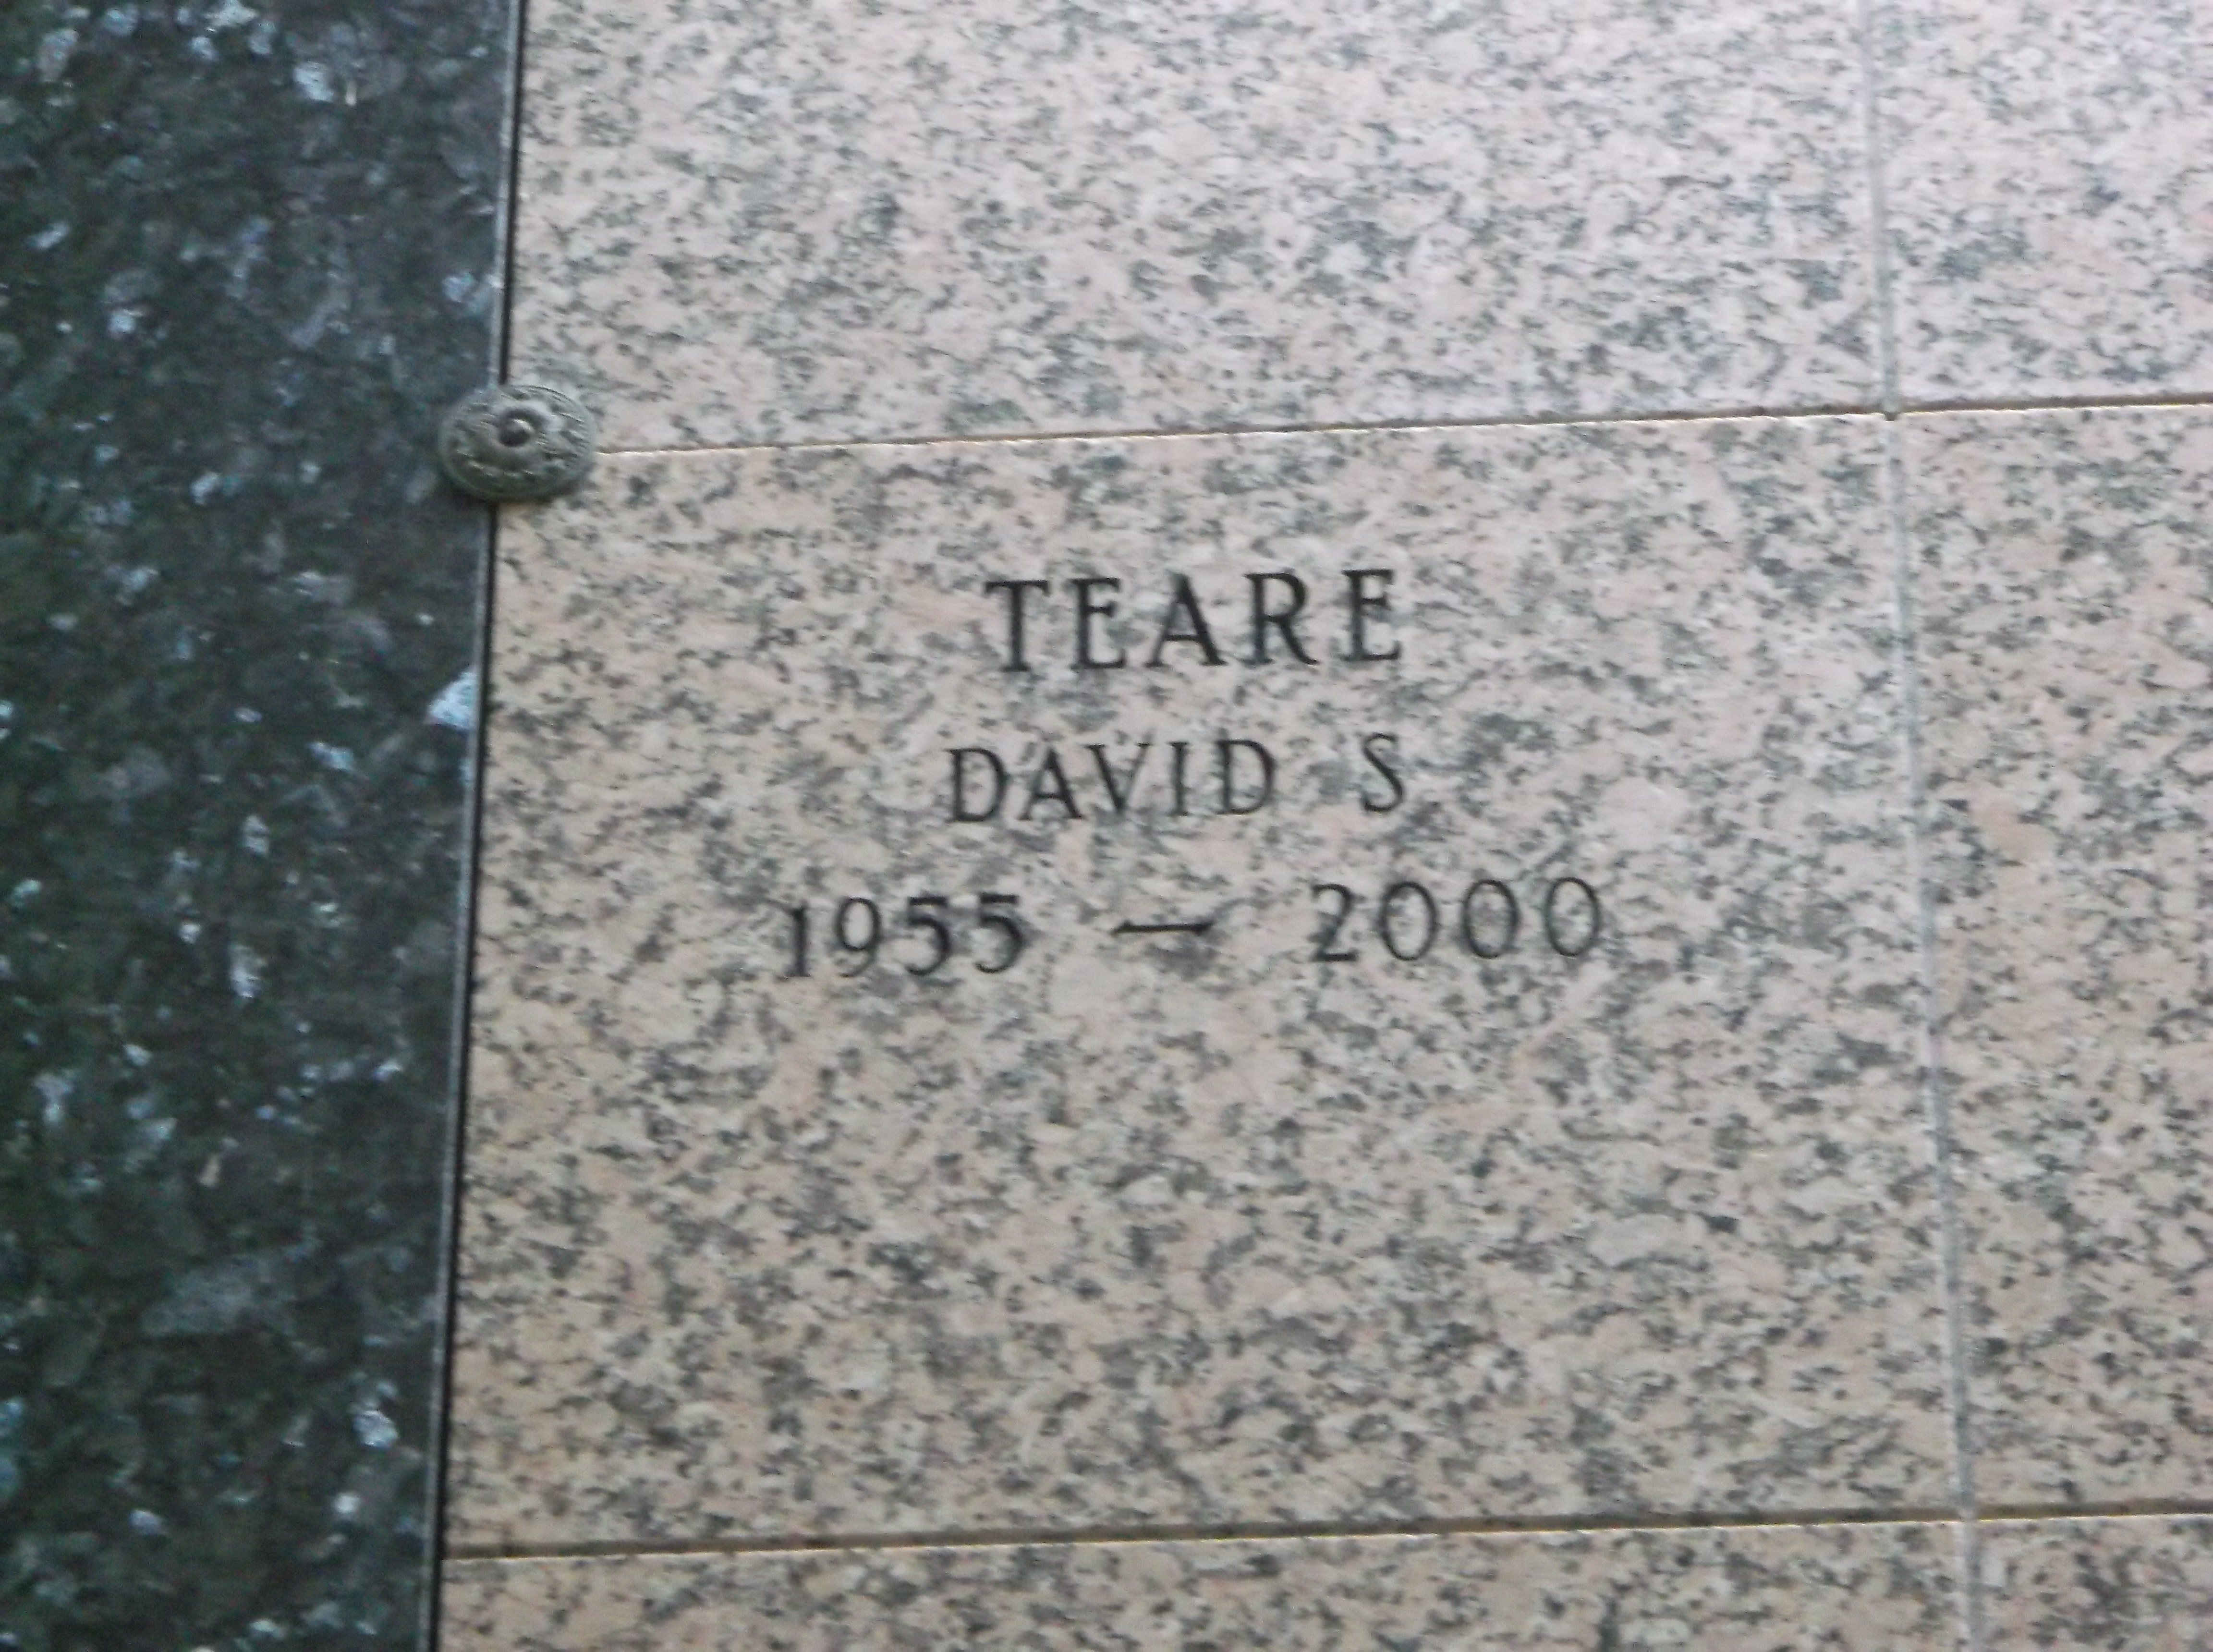 David S Teare